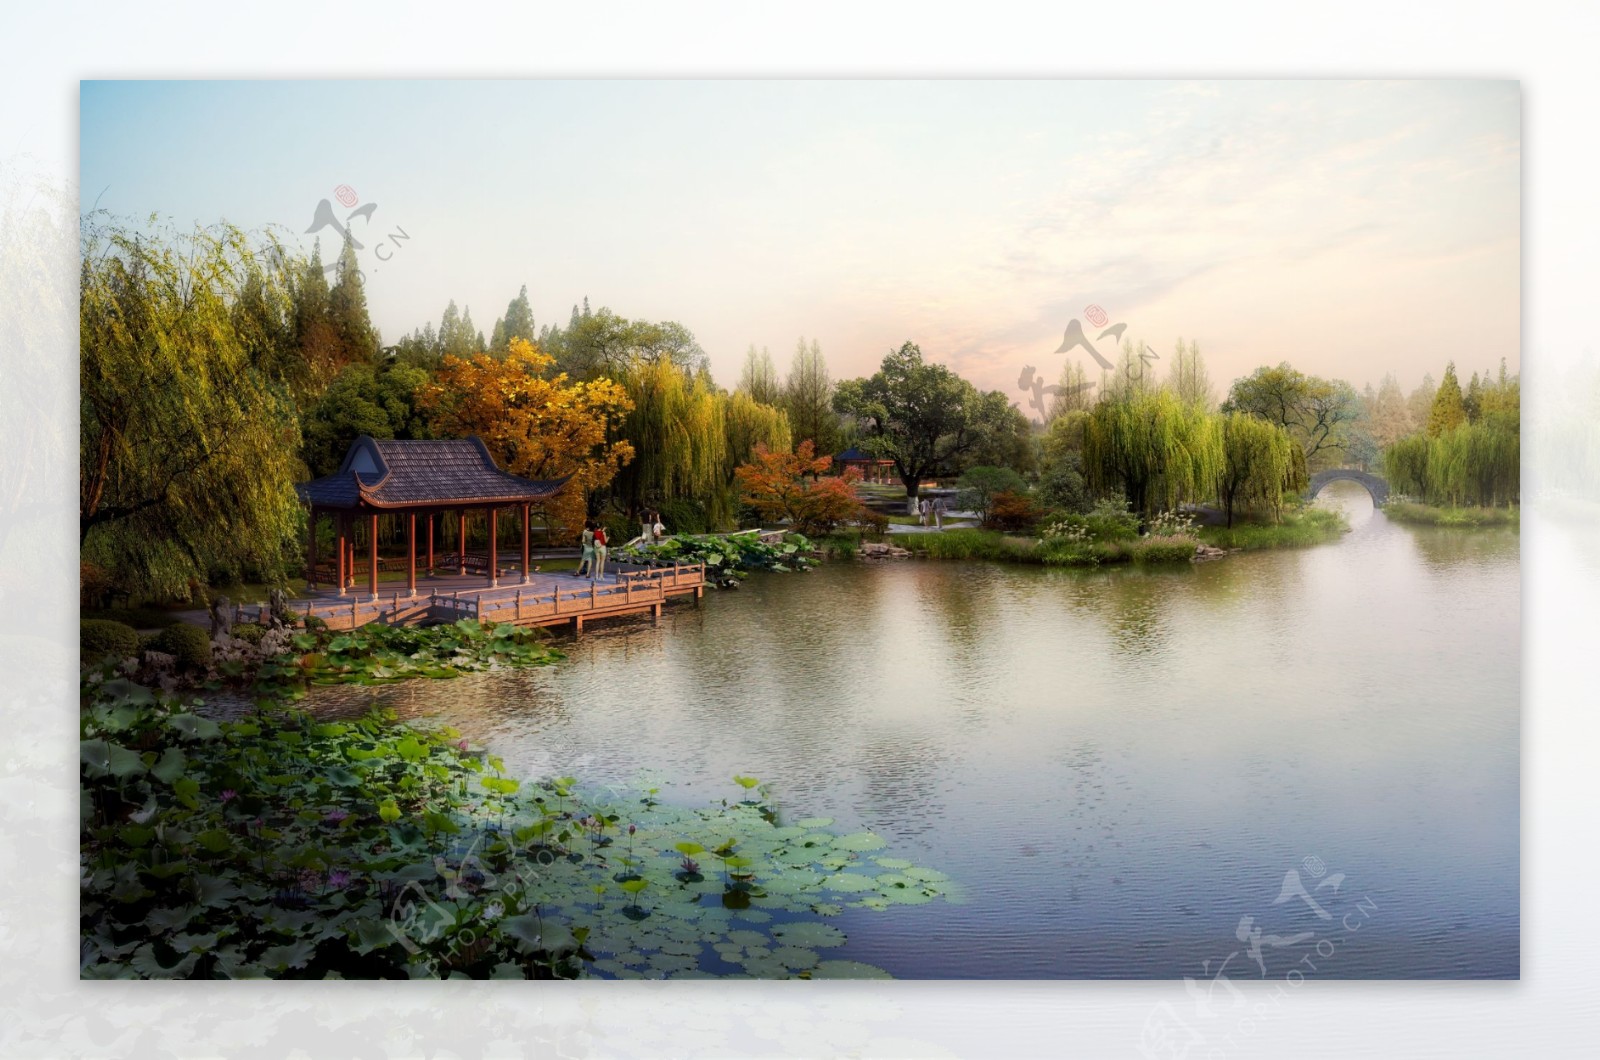 公园湖边休闲环境设计图片